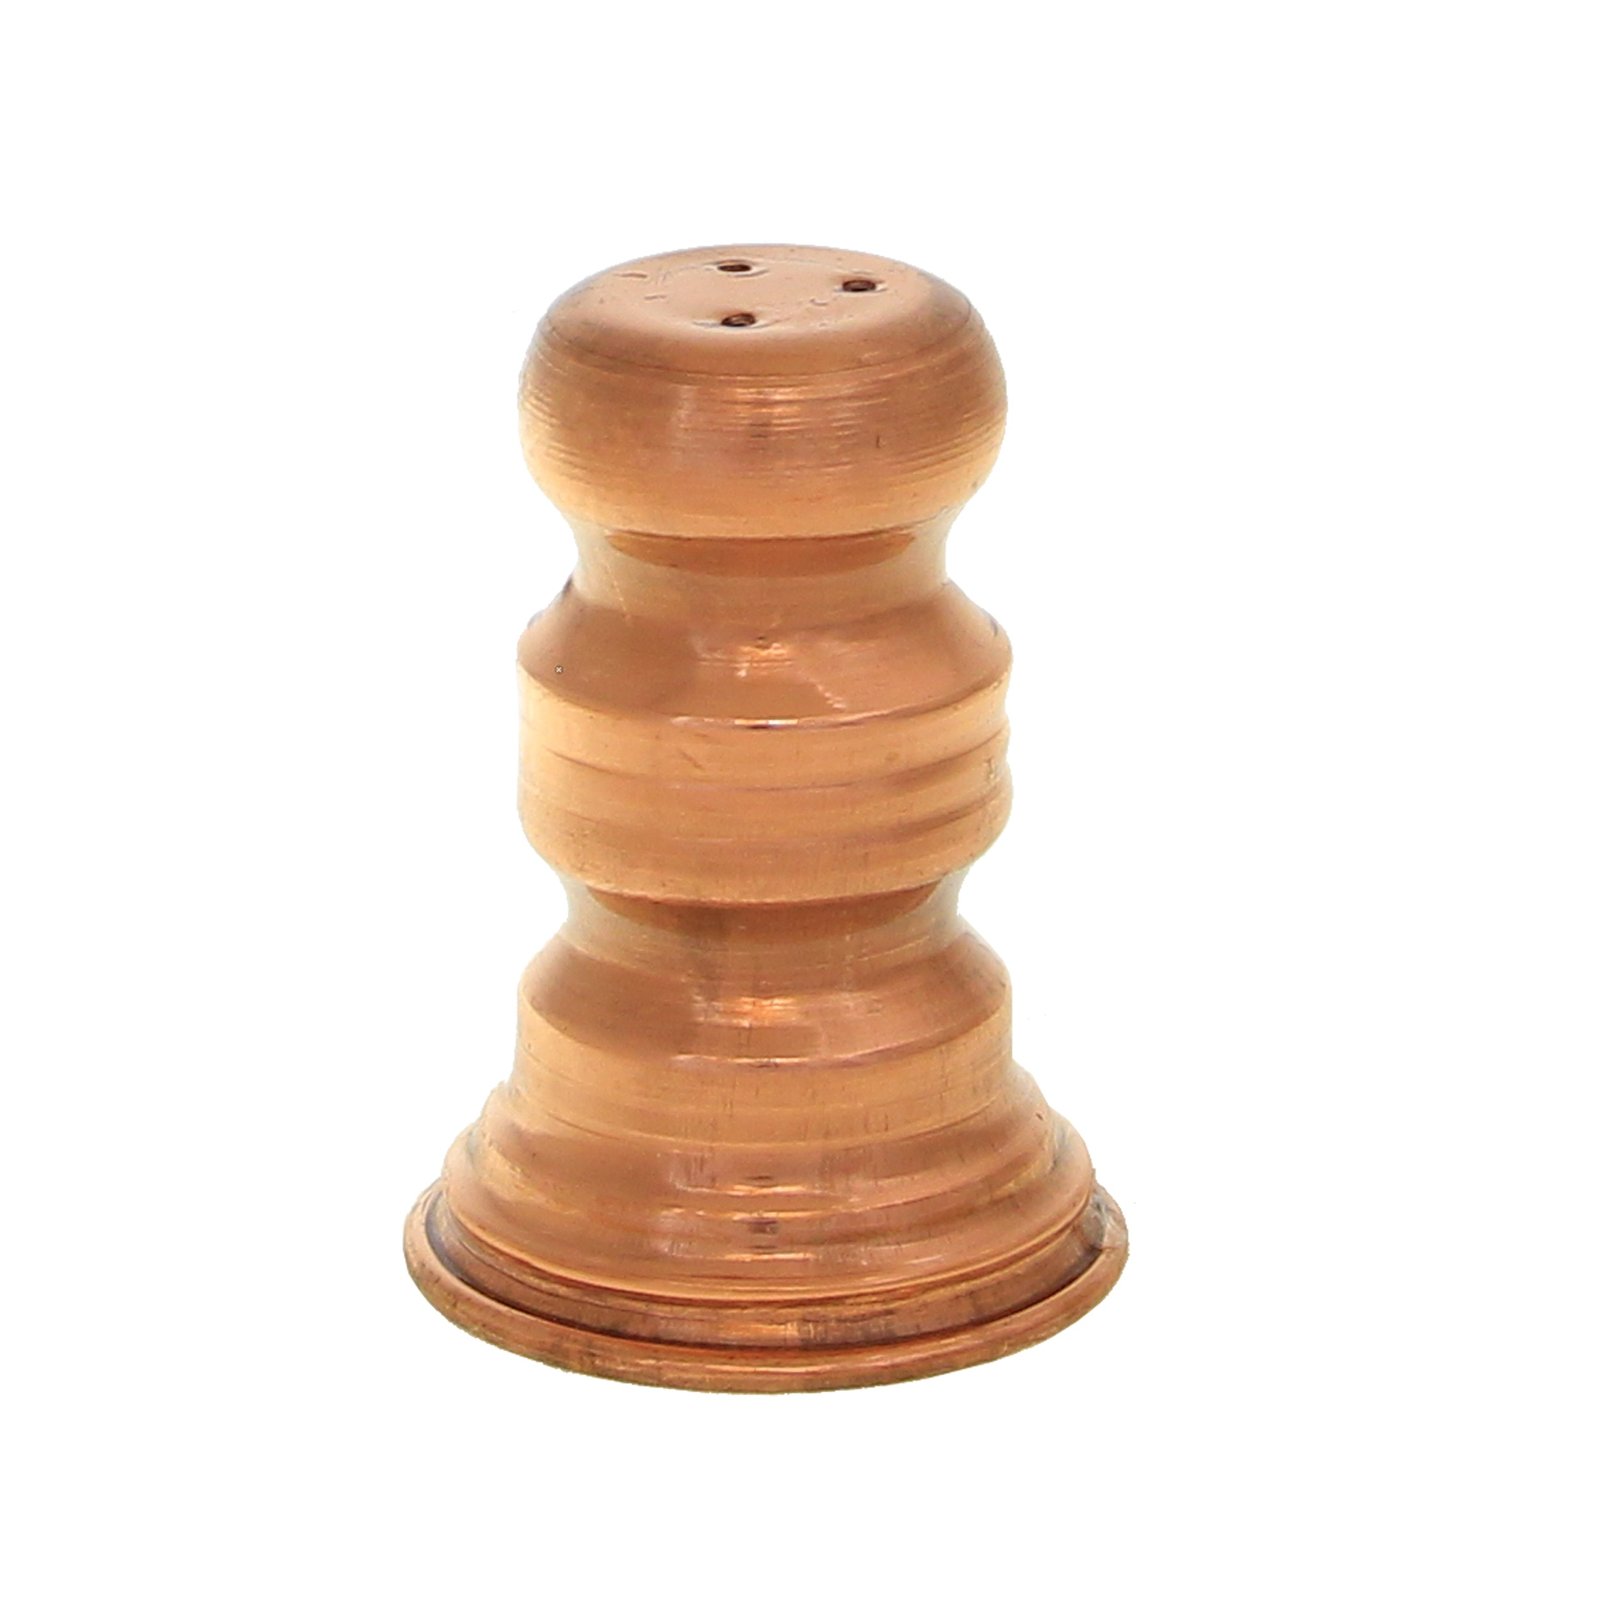 Handicraft Copper Spice container Chess model code 4414,Preis Kupfergeschirr,Preis Kupfer Kunsthandwerk